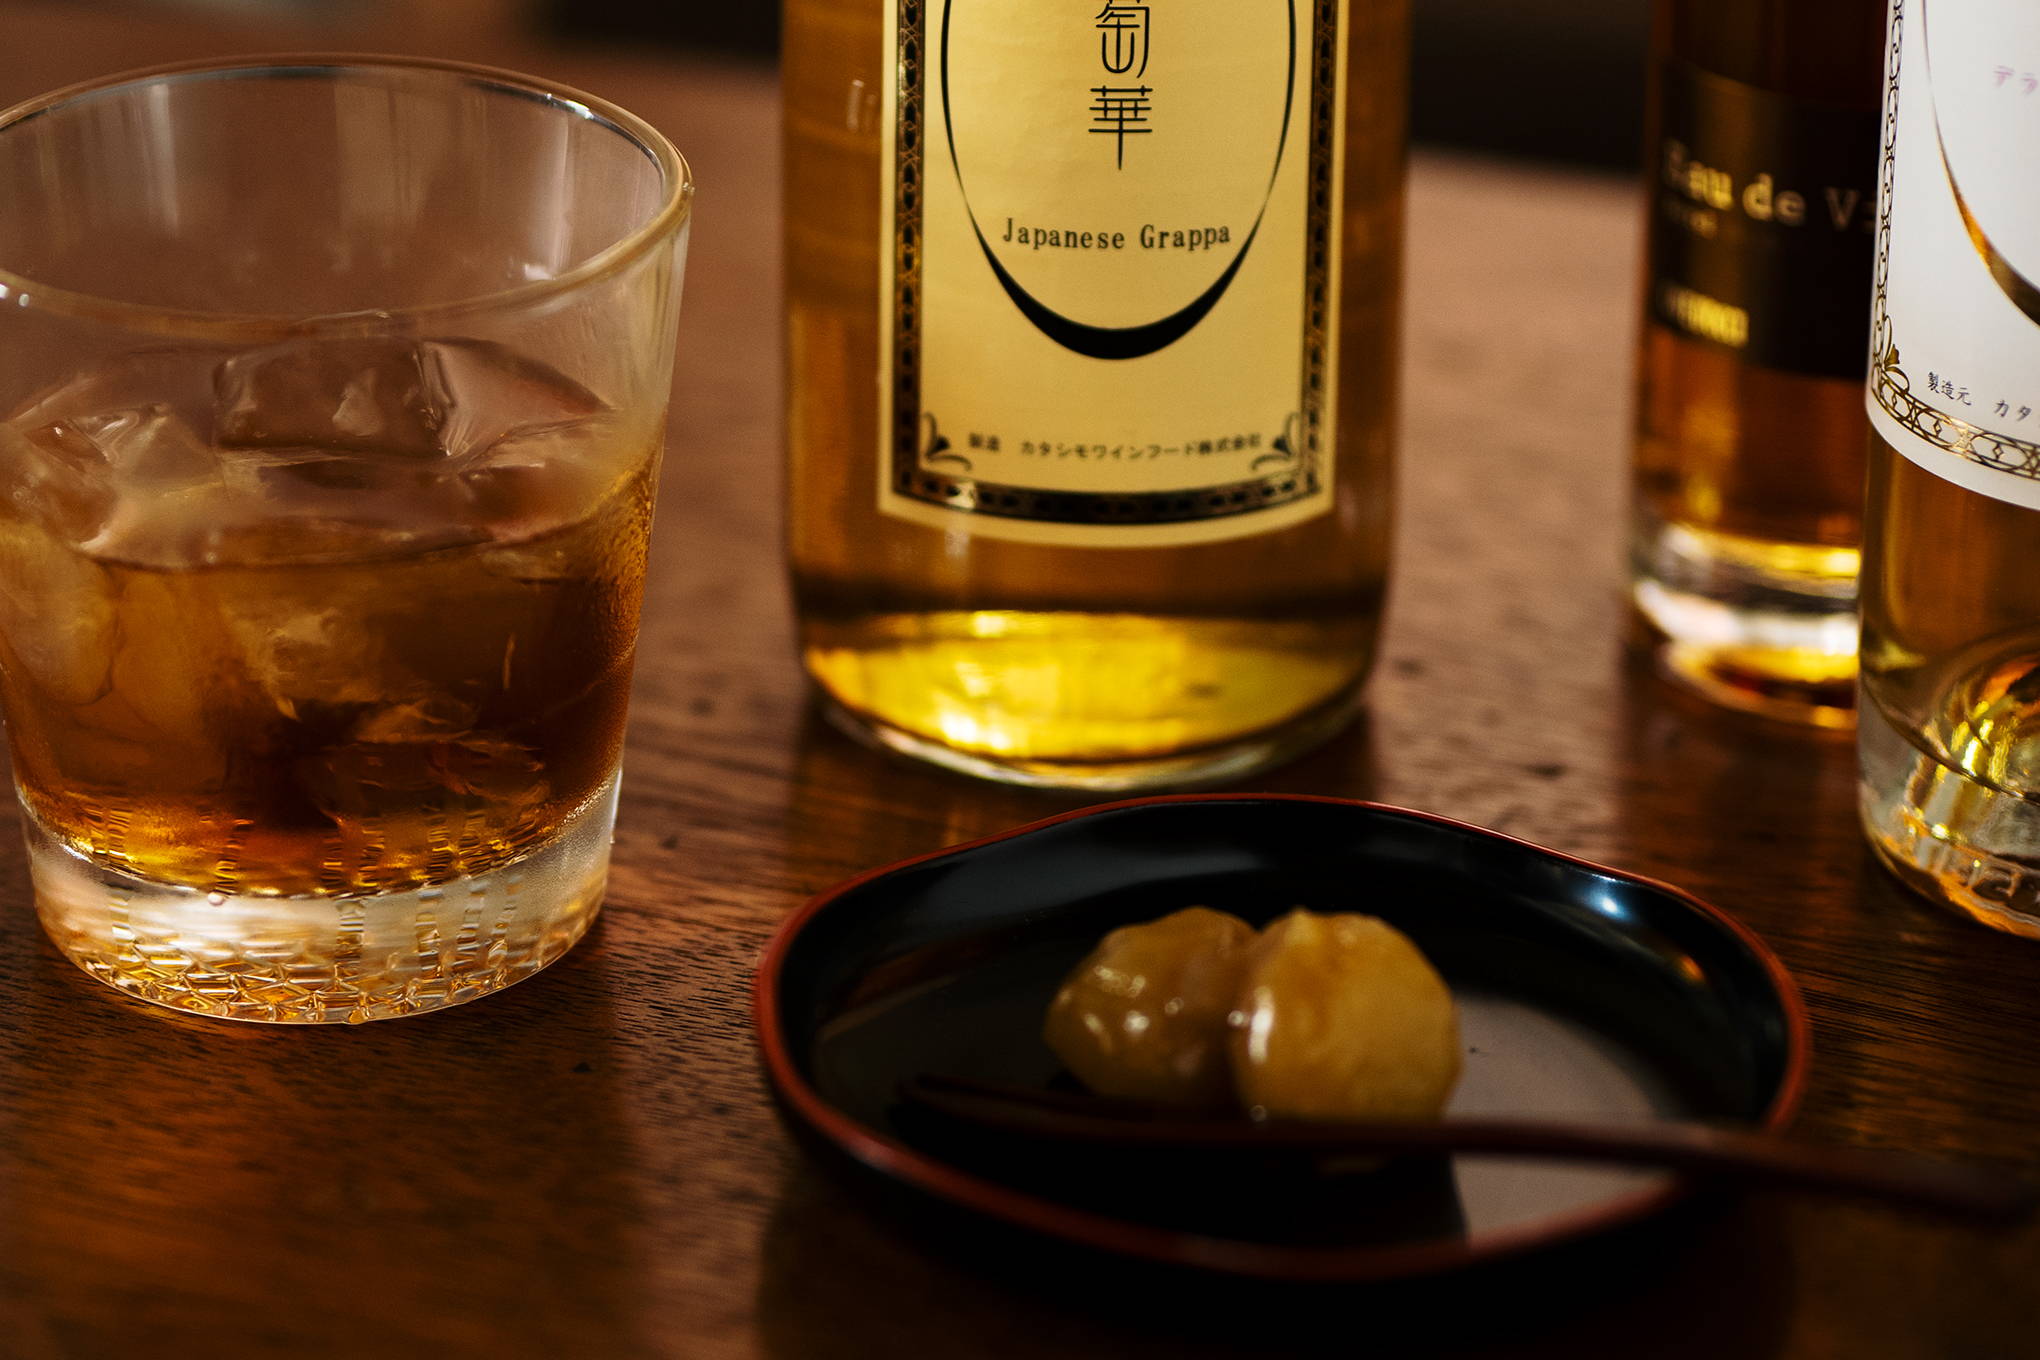 極上の香り、至高の味わいをゆっくり楽しむ贅沢。まだ見ぬ希少な日本ブランデーは、時間をかけて味わって。